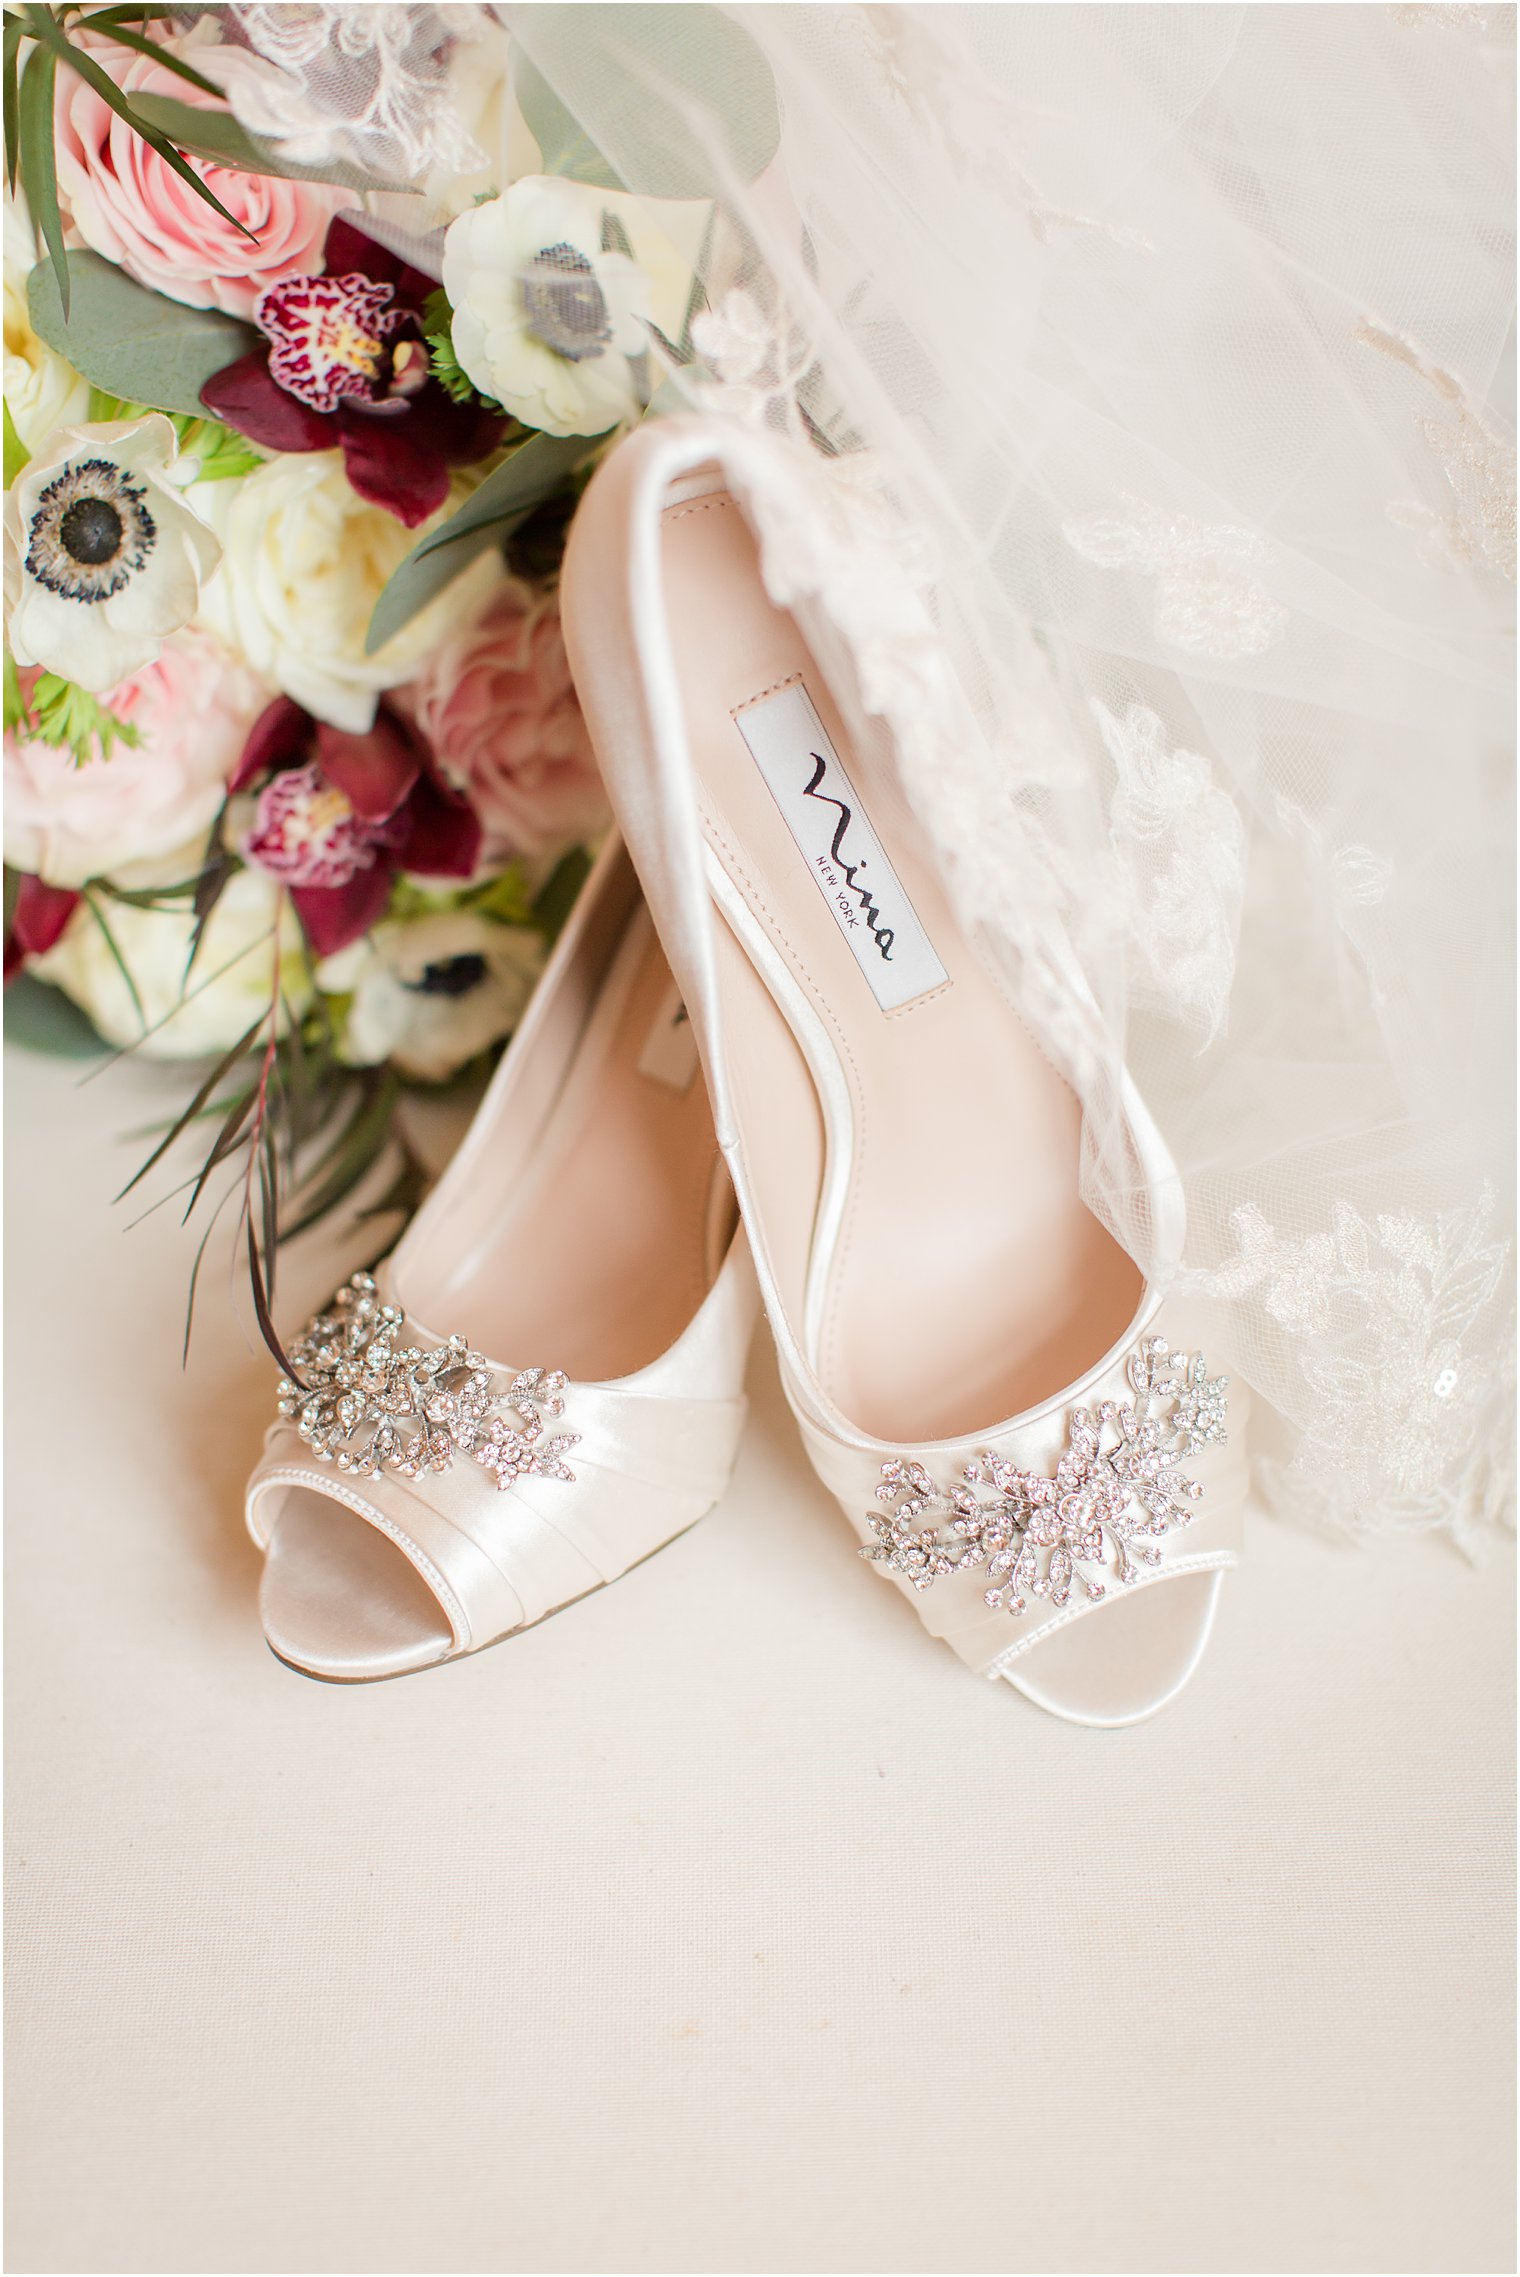 Nina bridal shoes